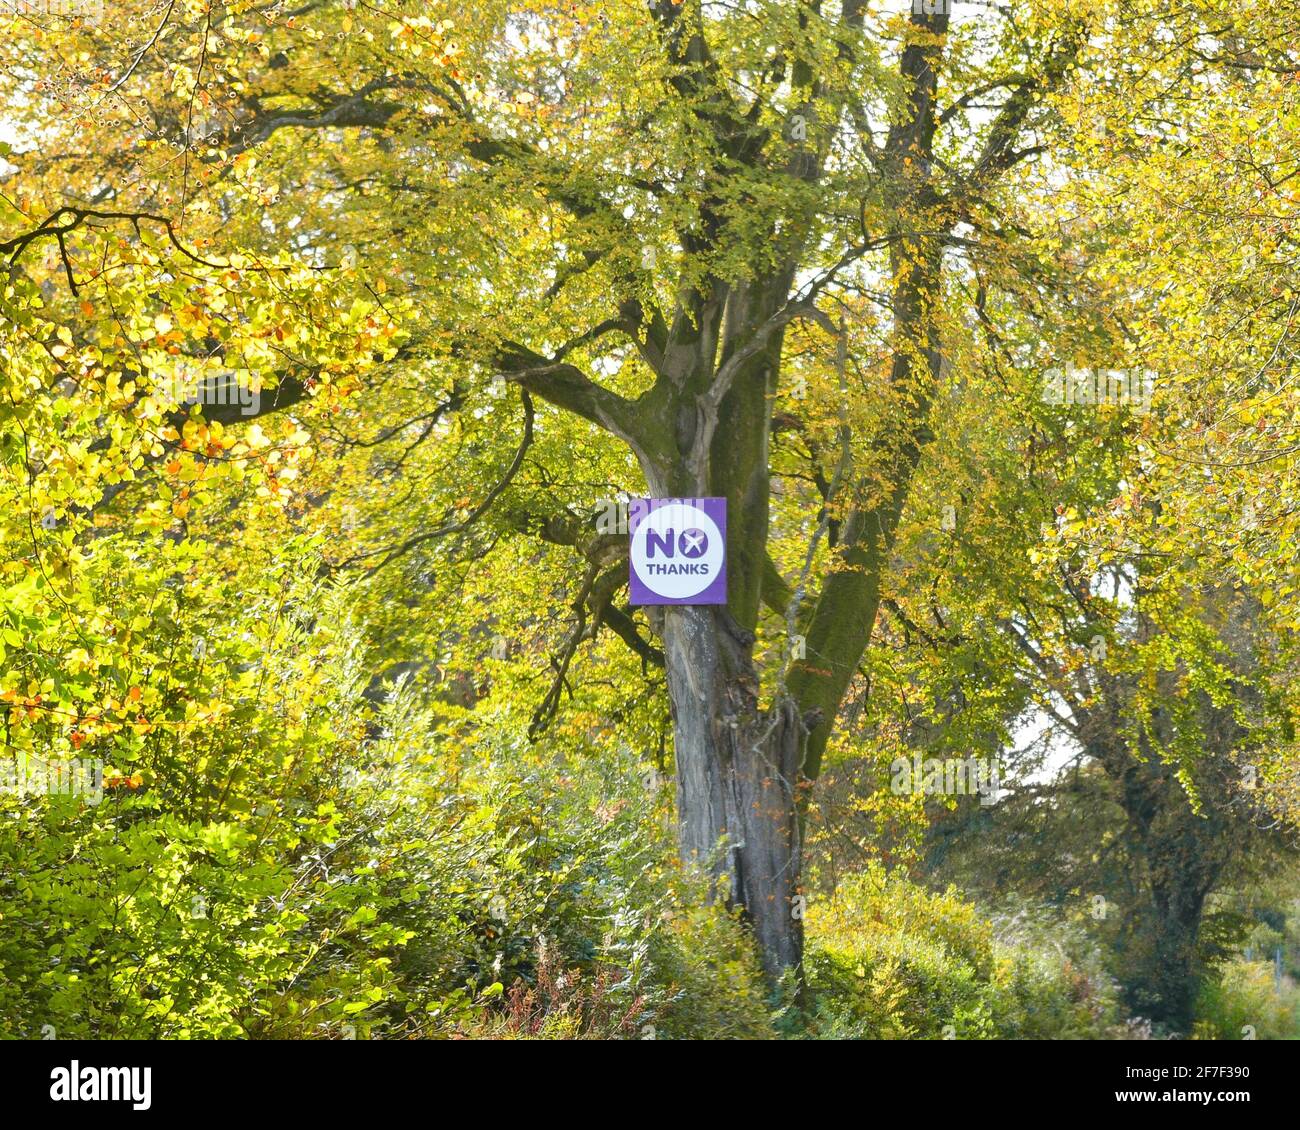 Non Thanks Sign fait partie de la campagne Better Together lors du référendum sur l'indépendance de l'Écosse en 2014, Stirling, Écosse, Royaume-Uni Banque D'Images